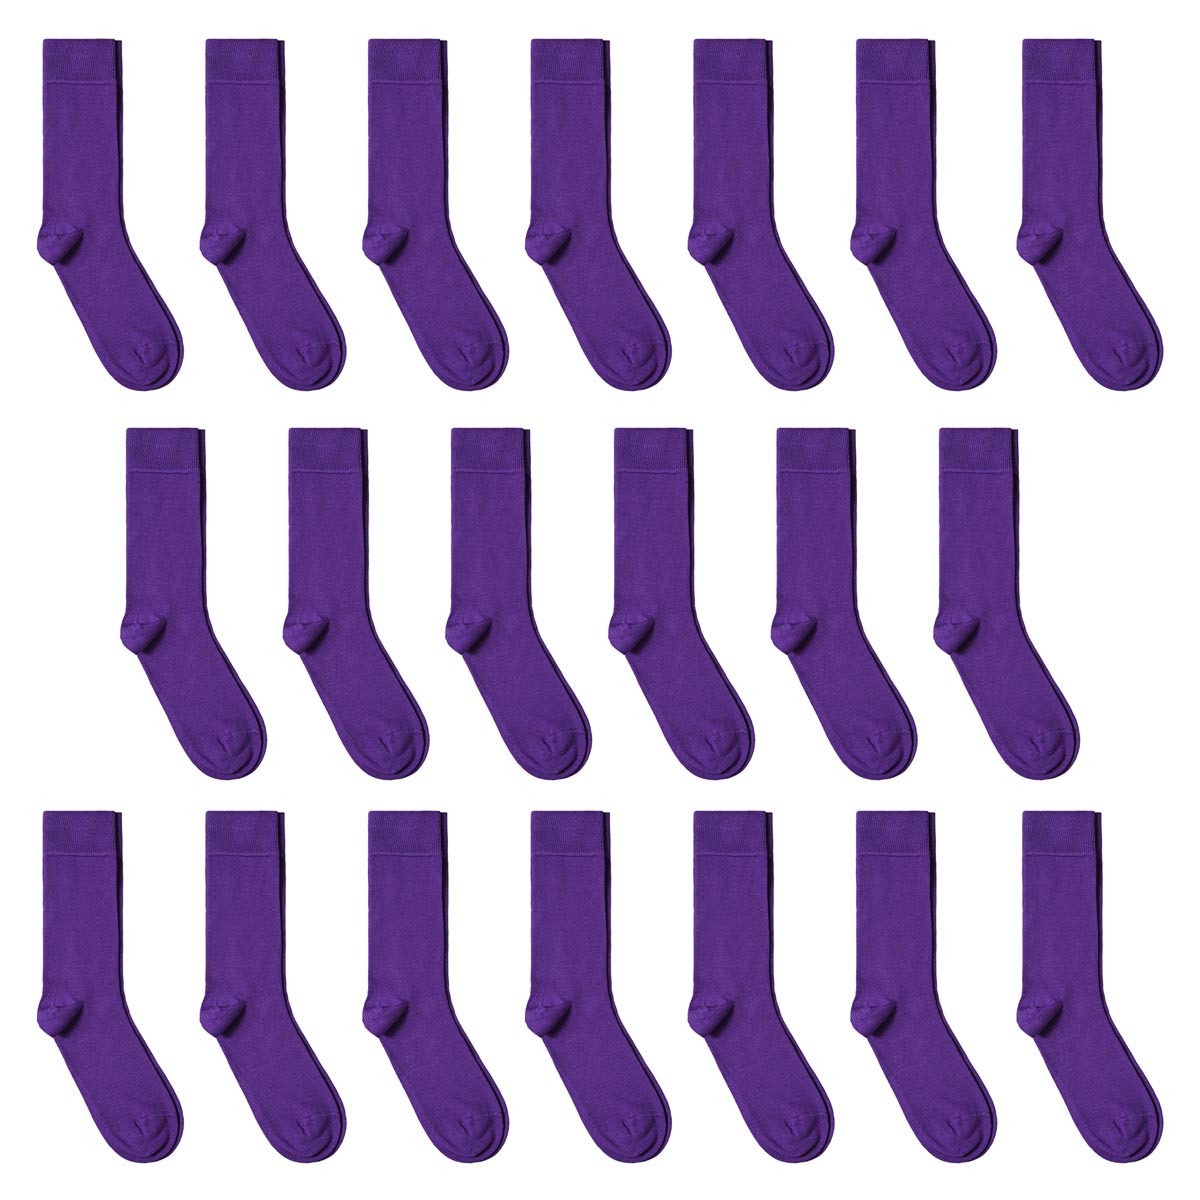 CH-00628_A12-1--_Lot-20-paires-de-chaussettes-homme-violet-unies